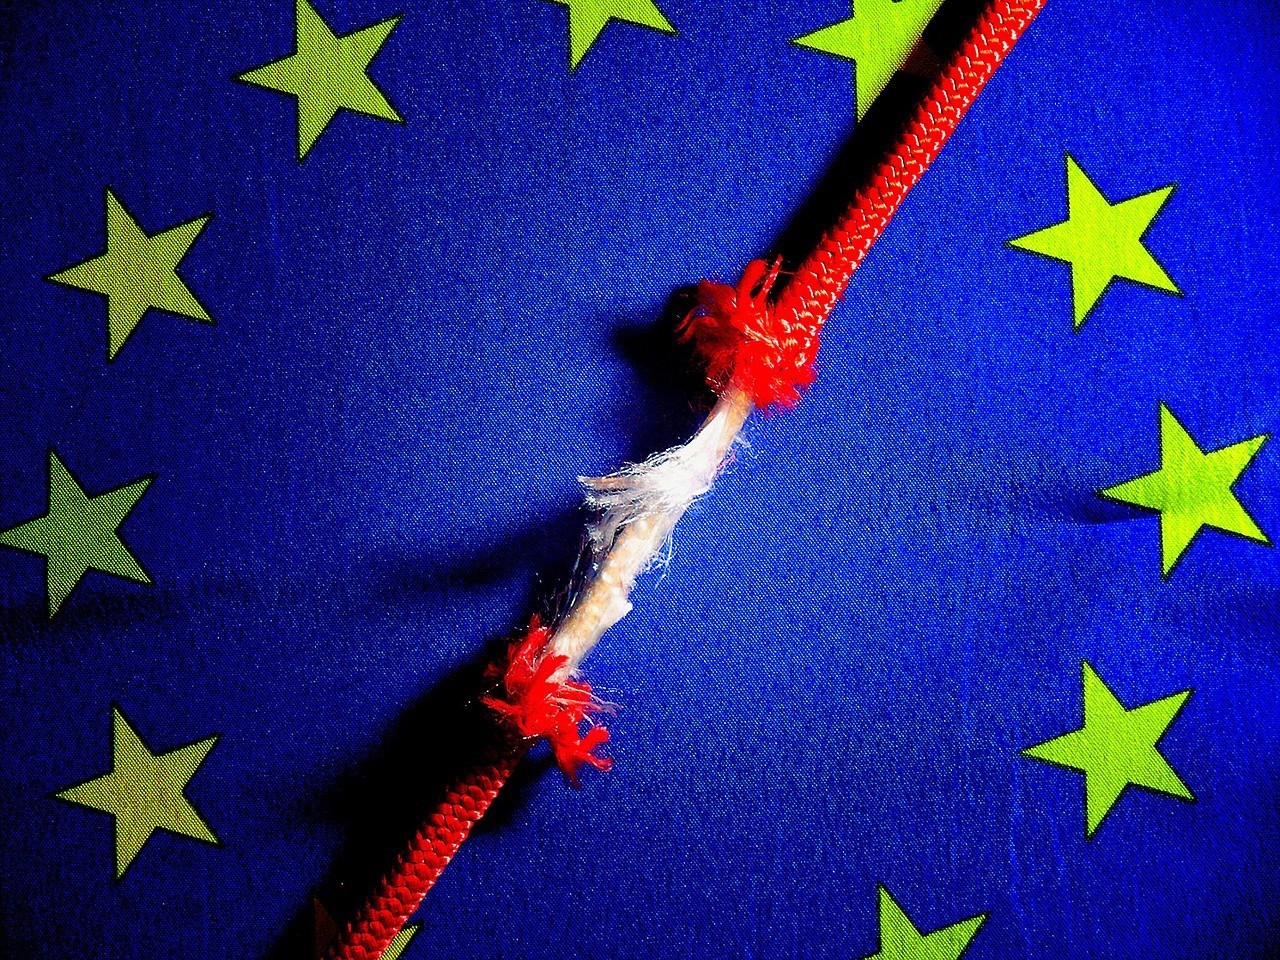 Wie aan het “blauwe doek” van de EU komt, riskeert gevangenisstraf